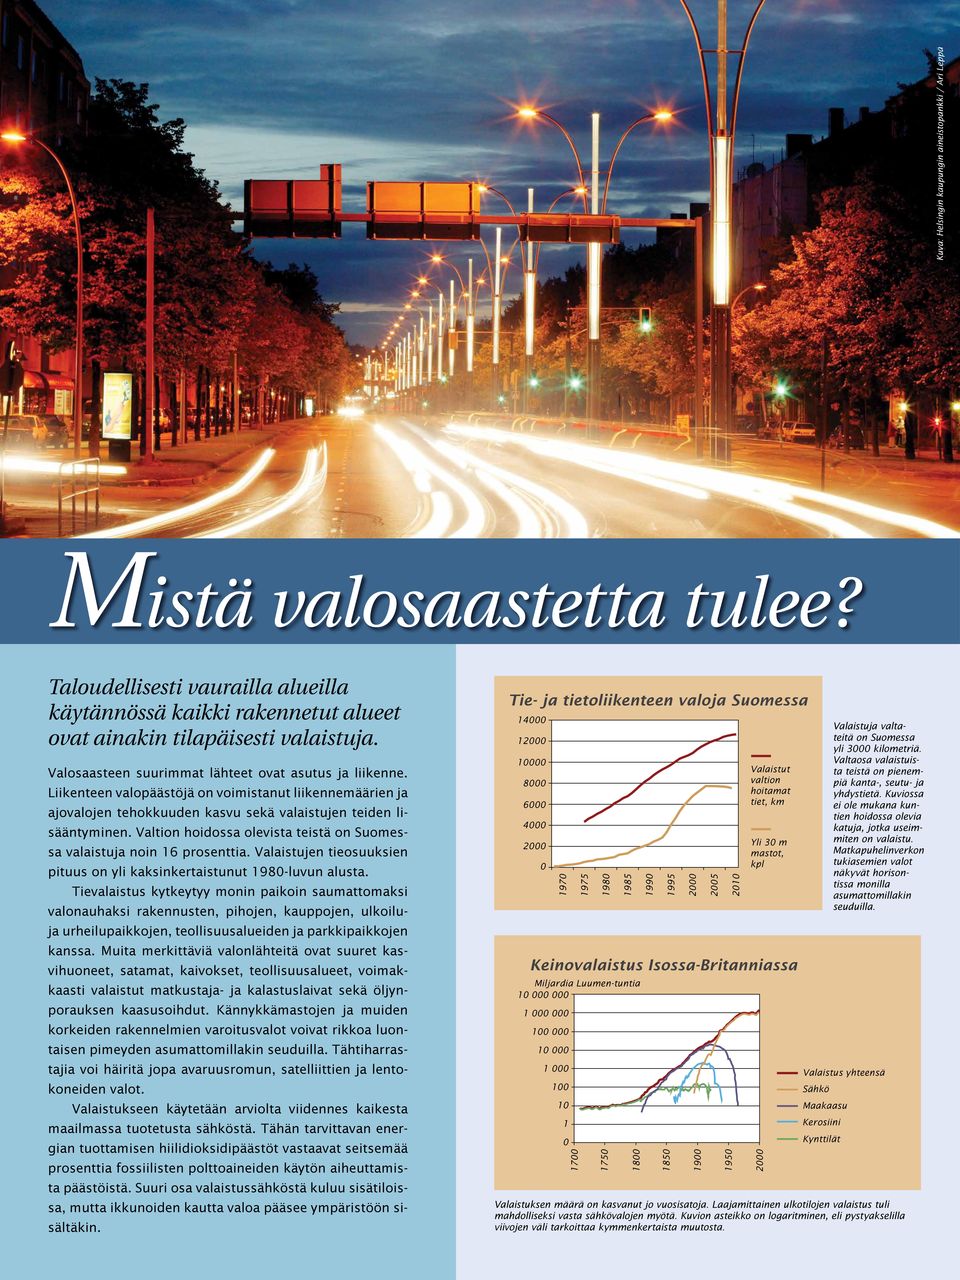 Valtion hoidossa olevista teistä on Suomessa valaistuja noin 16 prosenttia. Valaistujen tieosuuksien pituus on yli kaksinkertaistunut 1980-luvun alusta.